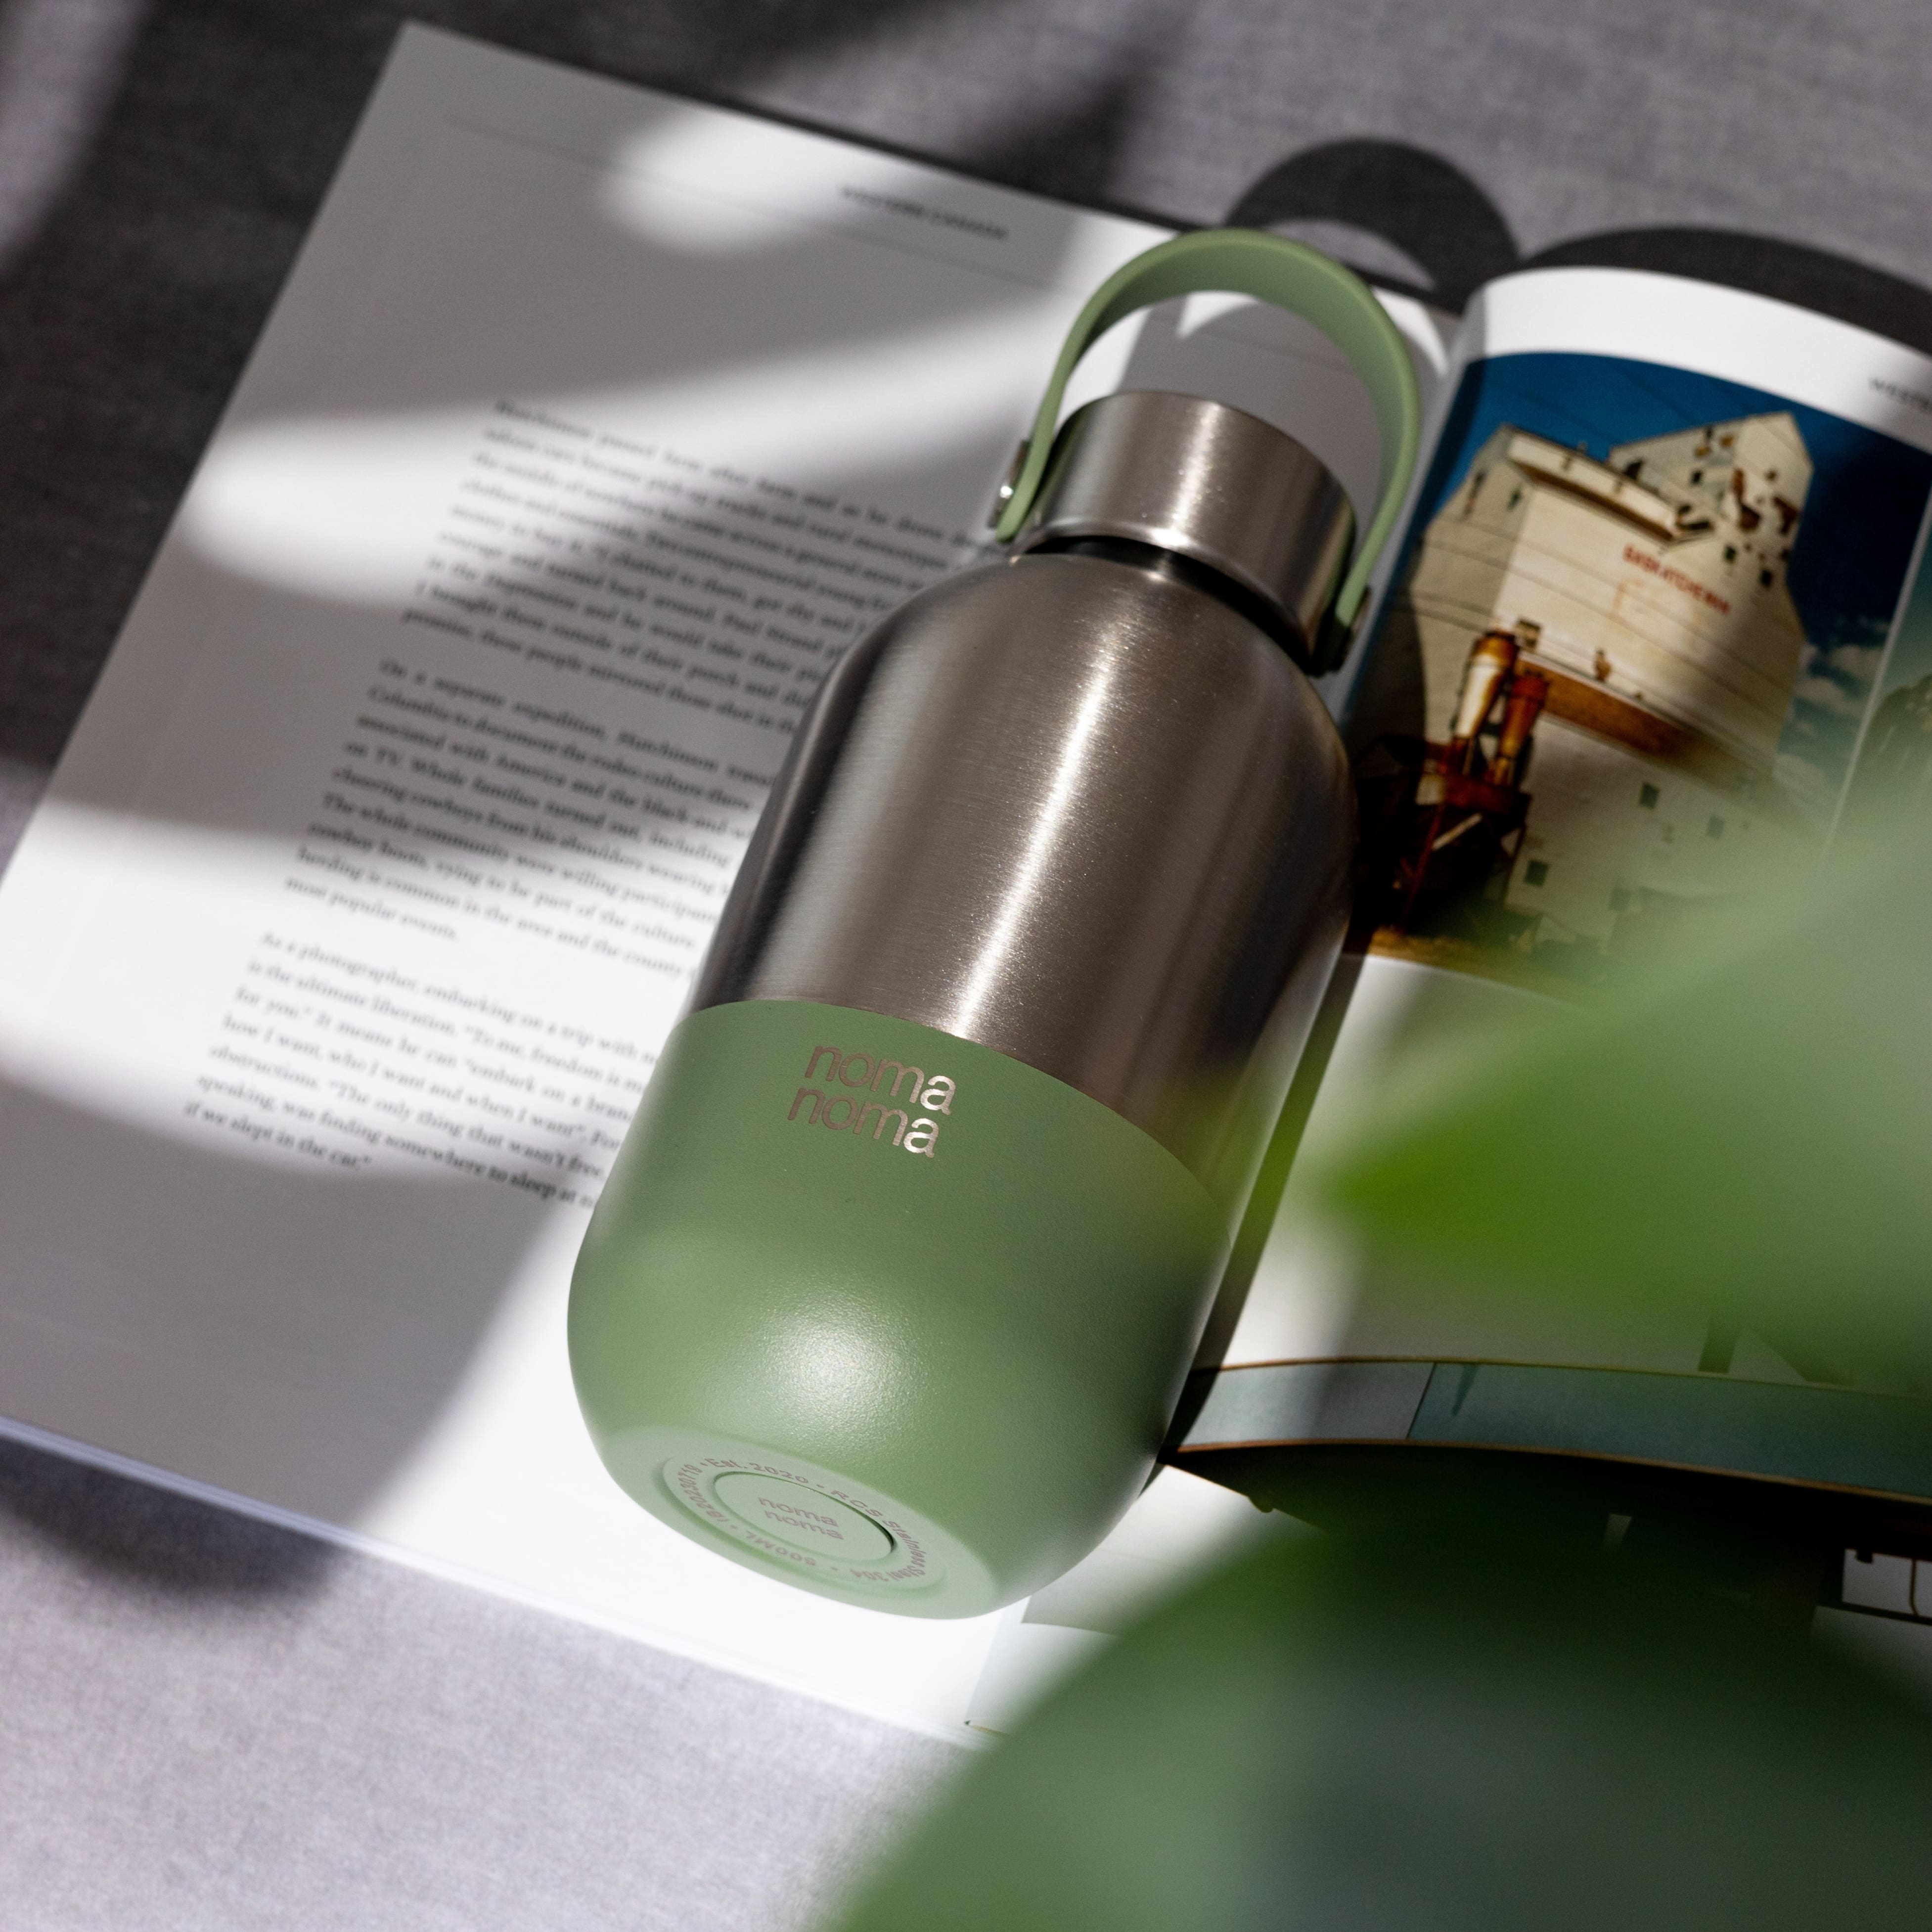 Die noma noma Edelstahl Wasserflasche in grün (500ml) liegt auf einem aufgefaltetem Buch